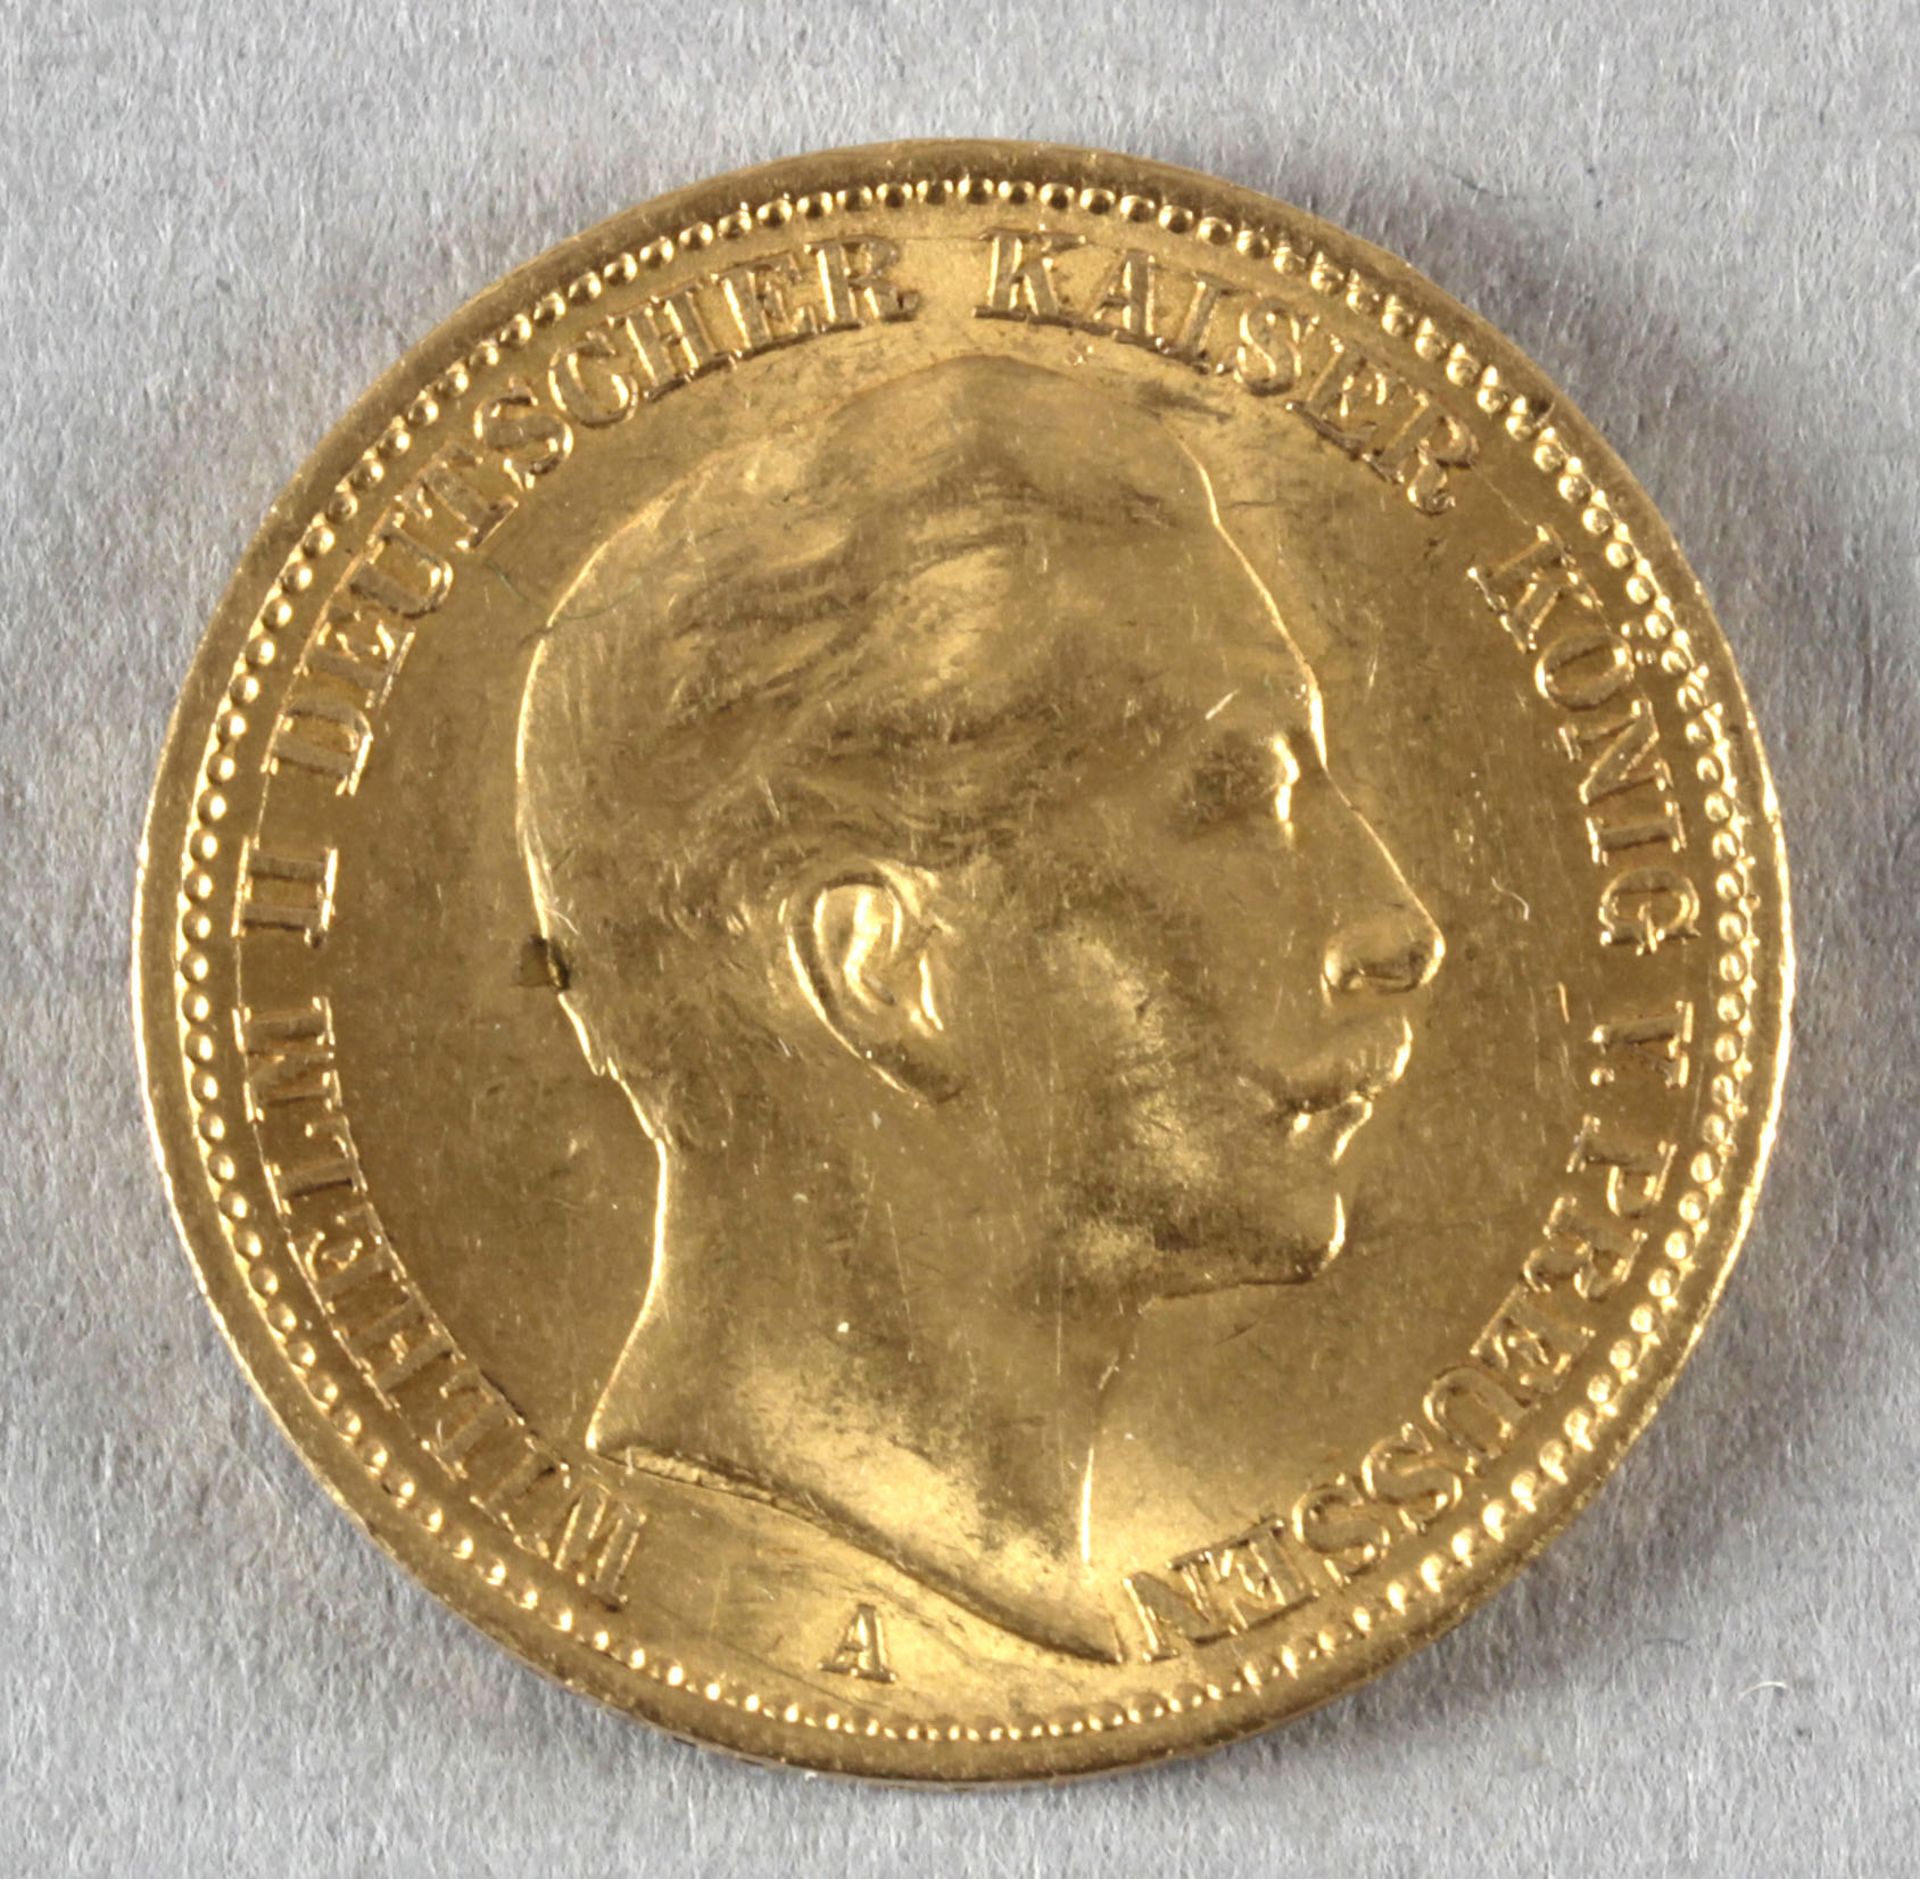 Goldmünze, 20 Mark, dt. Kaiserreich (Preußen), 1910 A, Wilhelm II.